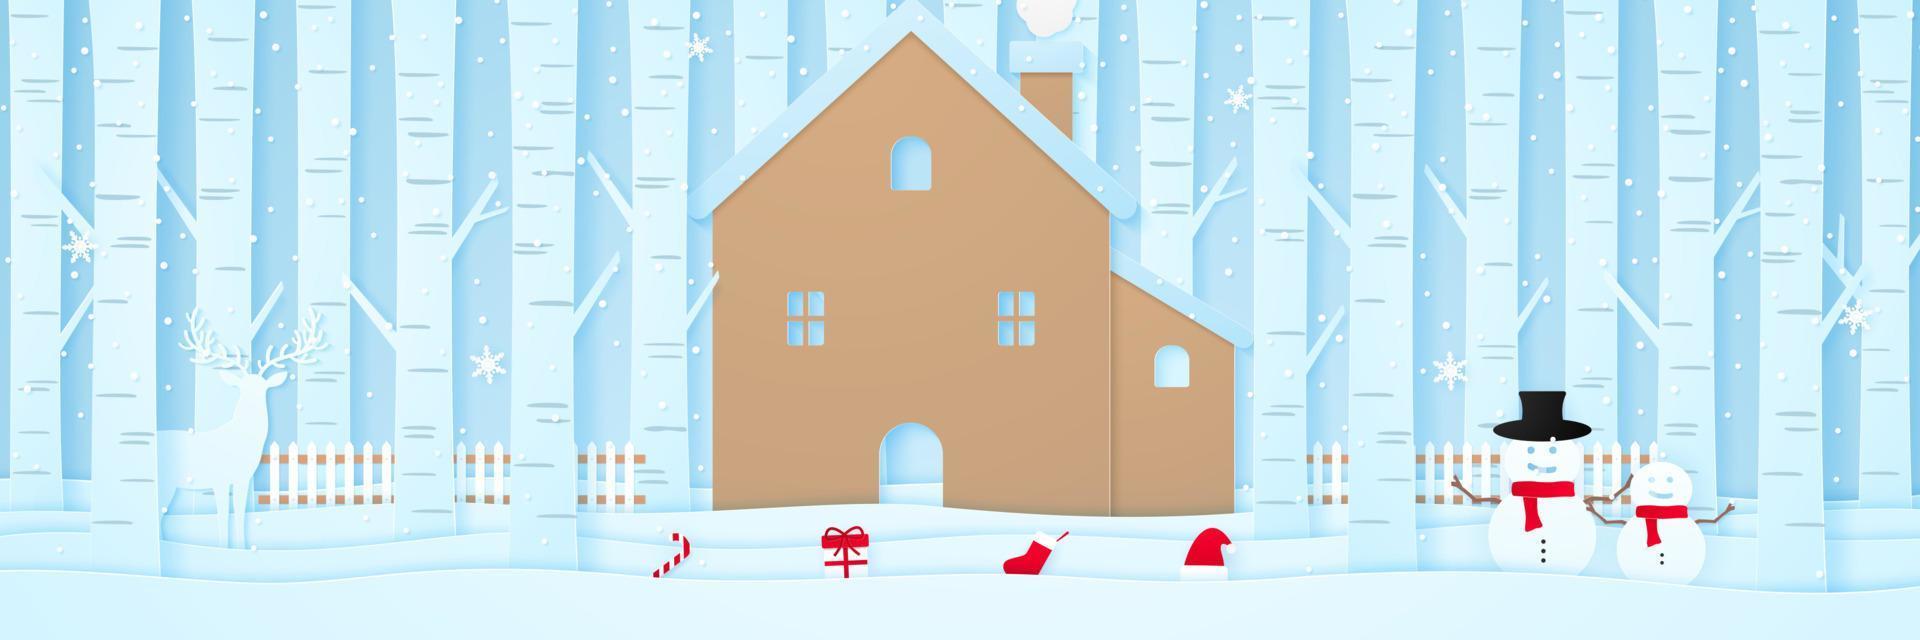 Frohe Weihnachten, Haus mit Rentieren, Schneemann, Weihnachtssachen, Zaun und Kiefern auf Schnee in der Winterlandschaft mit Schneefall, Papierkunststil vektor